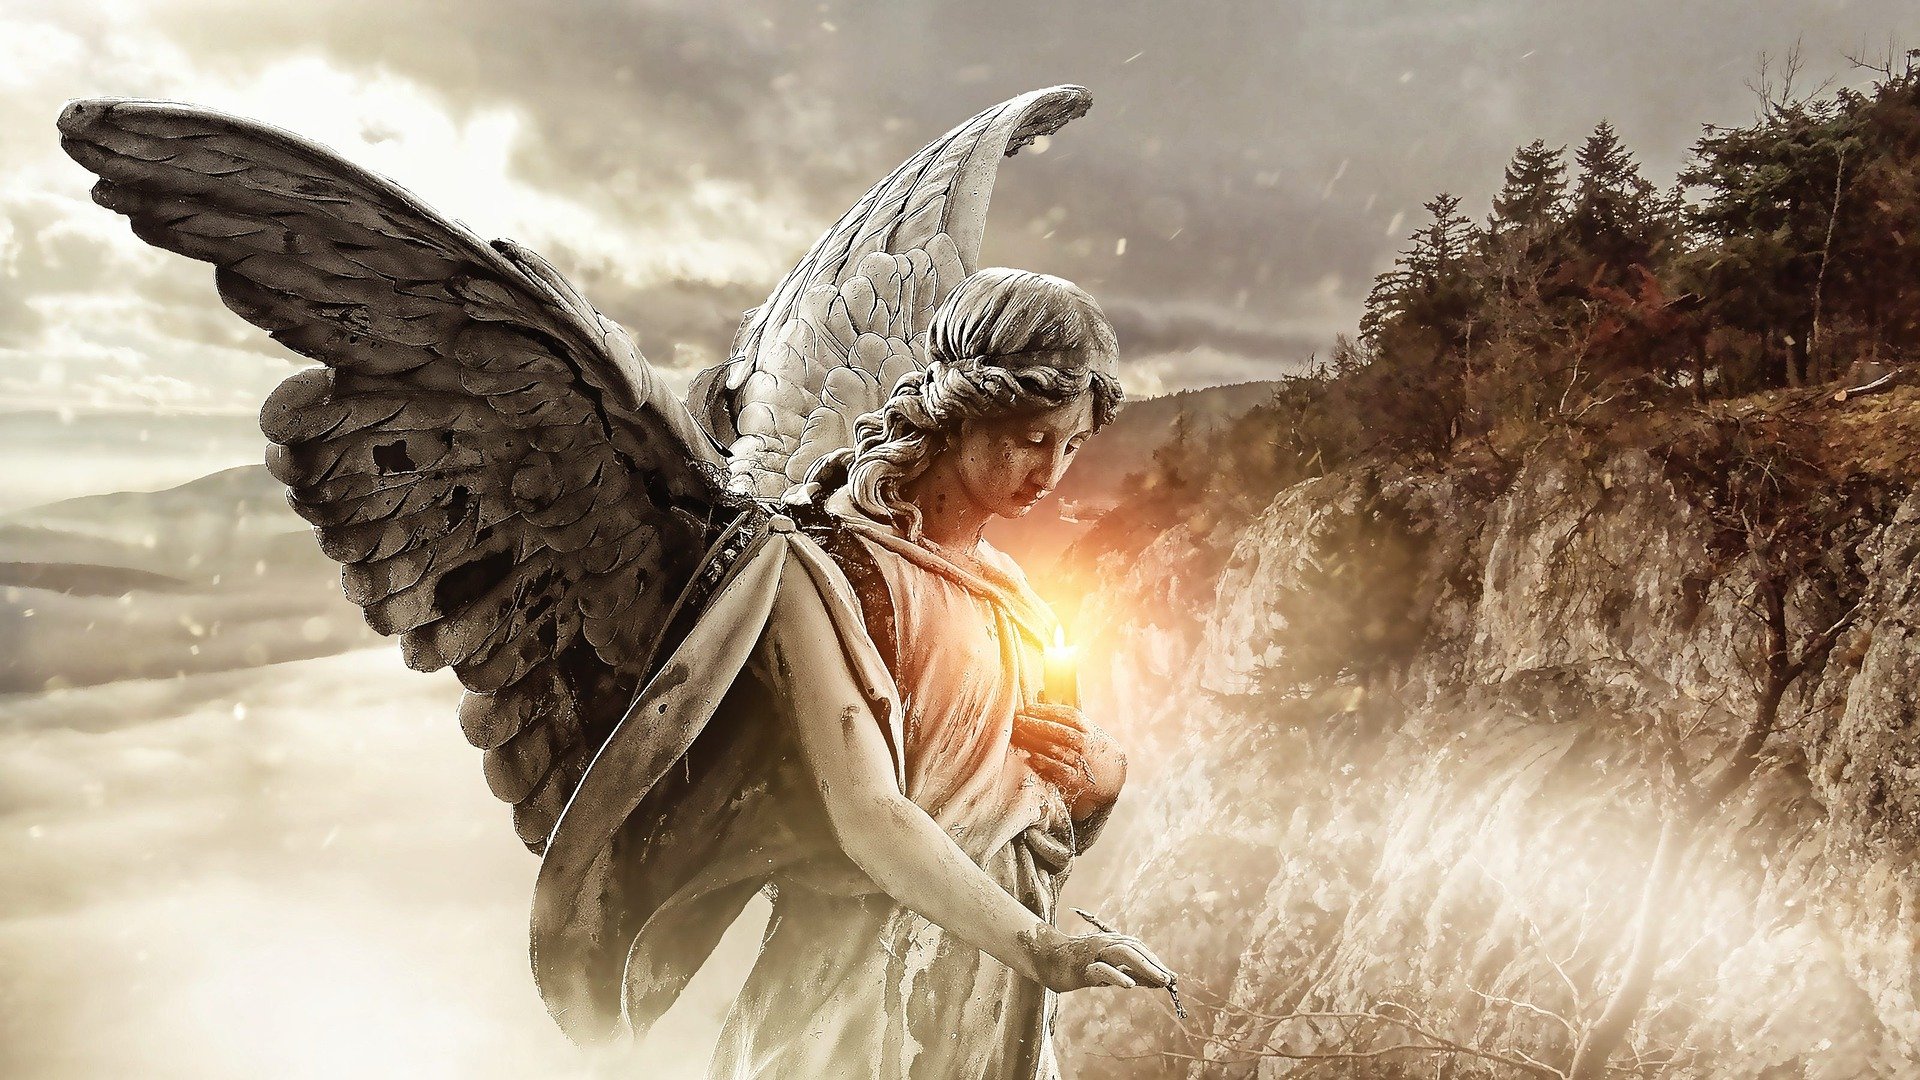  Visând la un înger: Semnele Frumoase pe care le vei IUBI